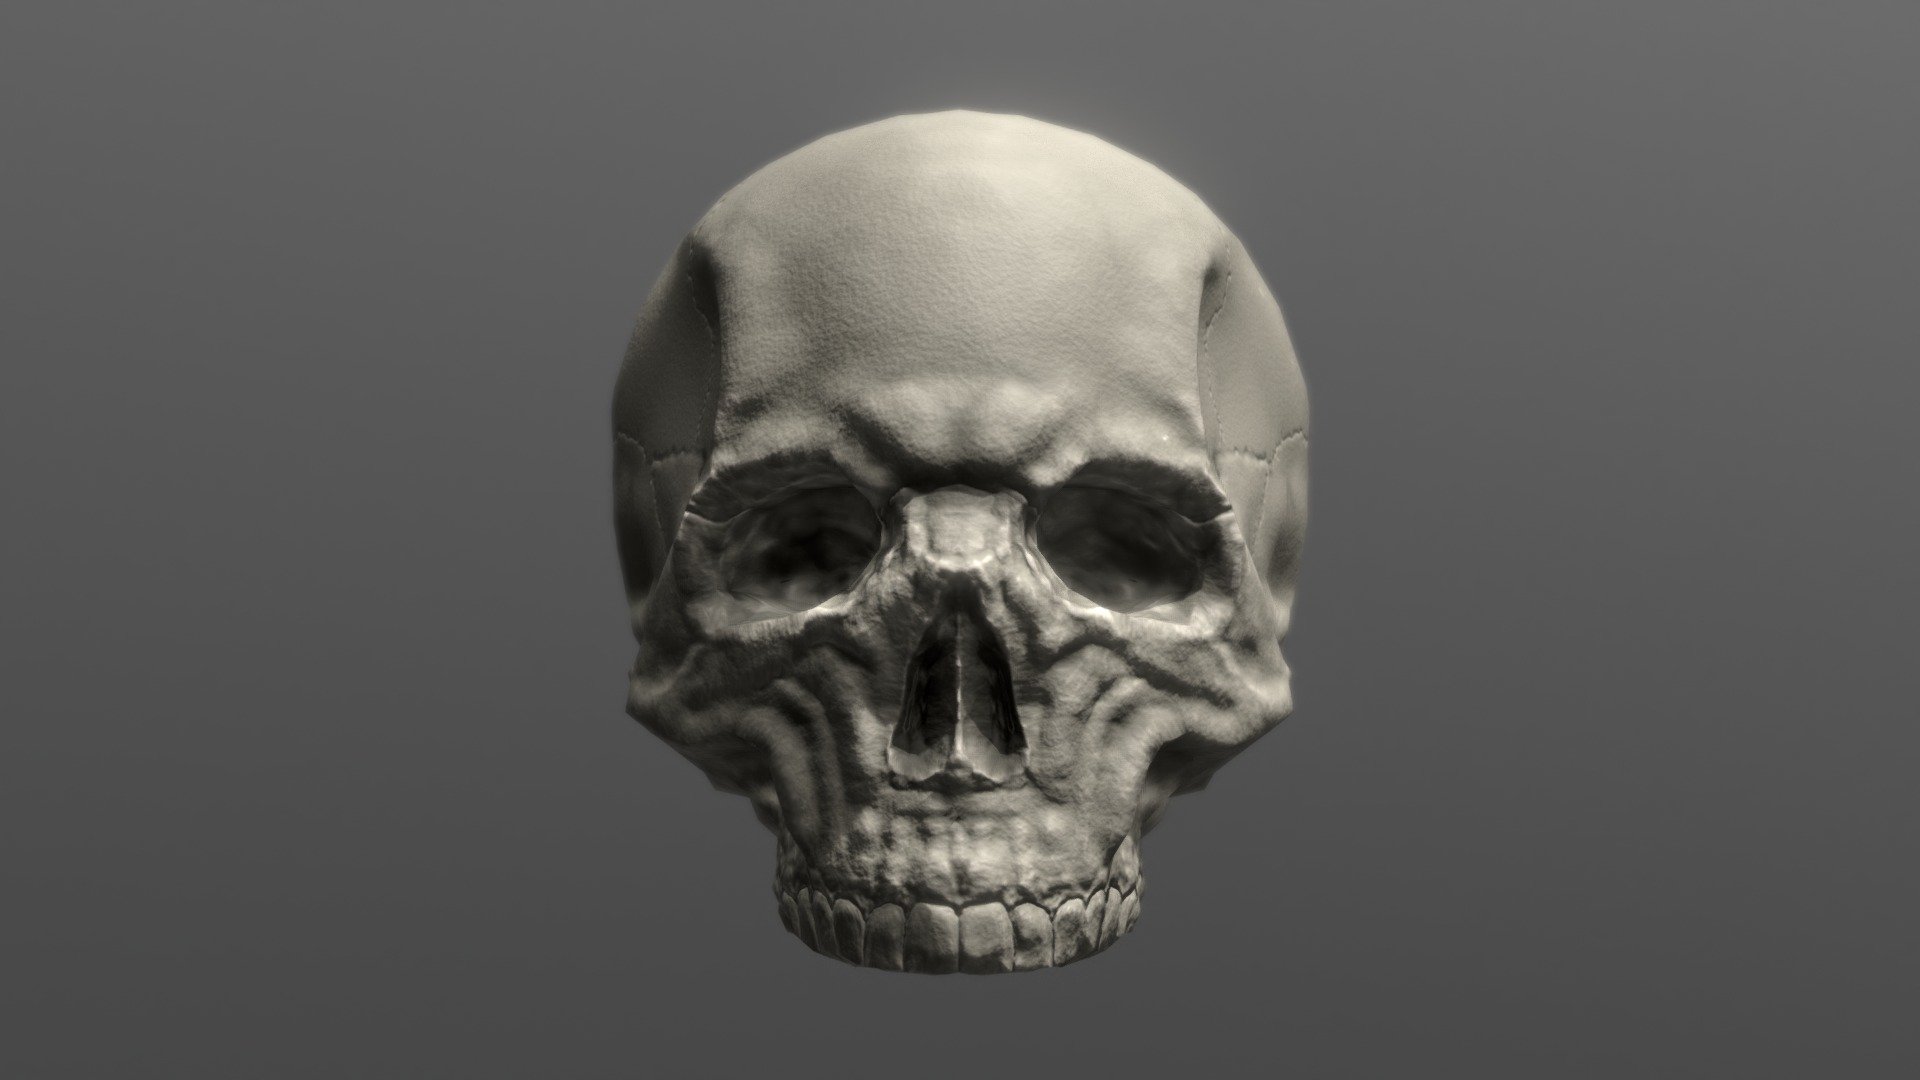 Skullette the skull